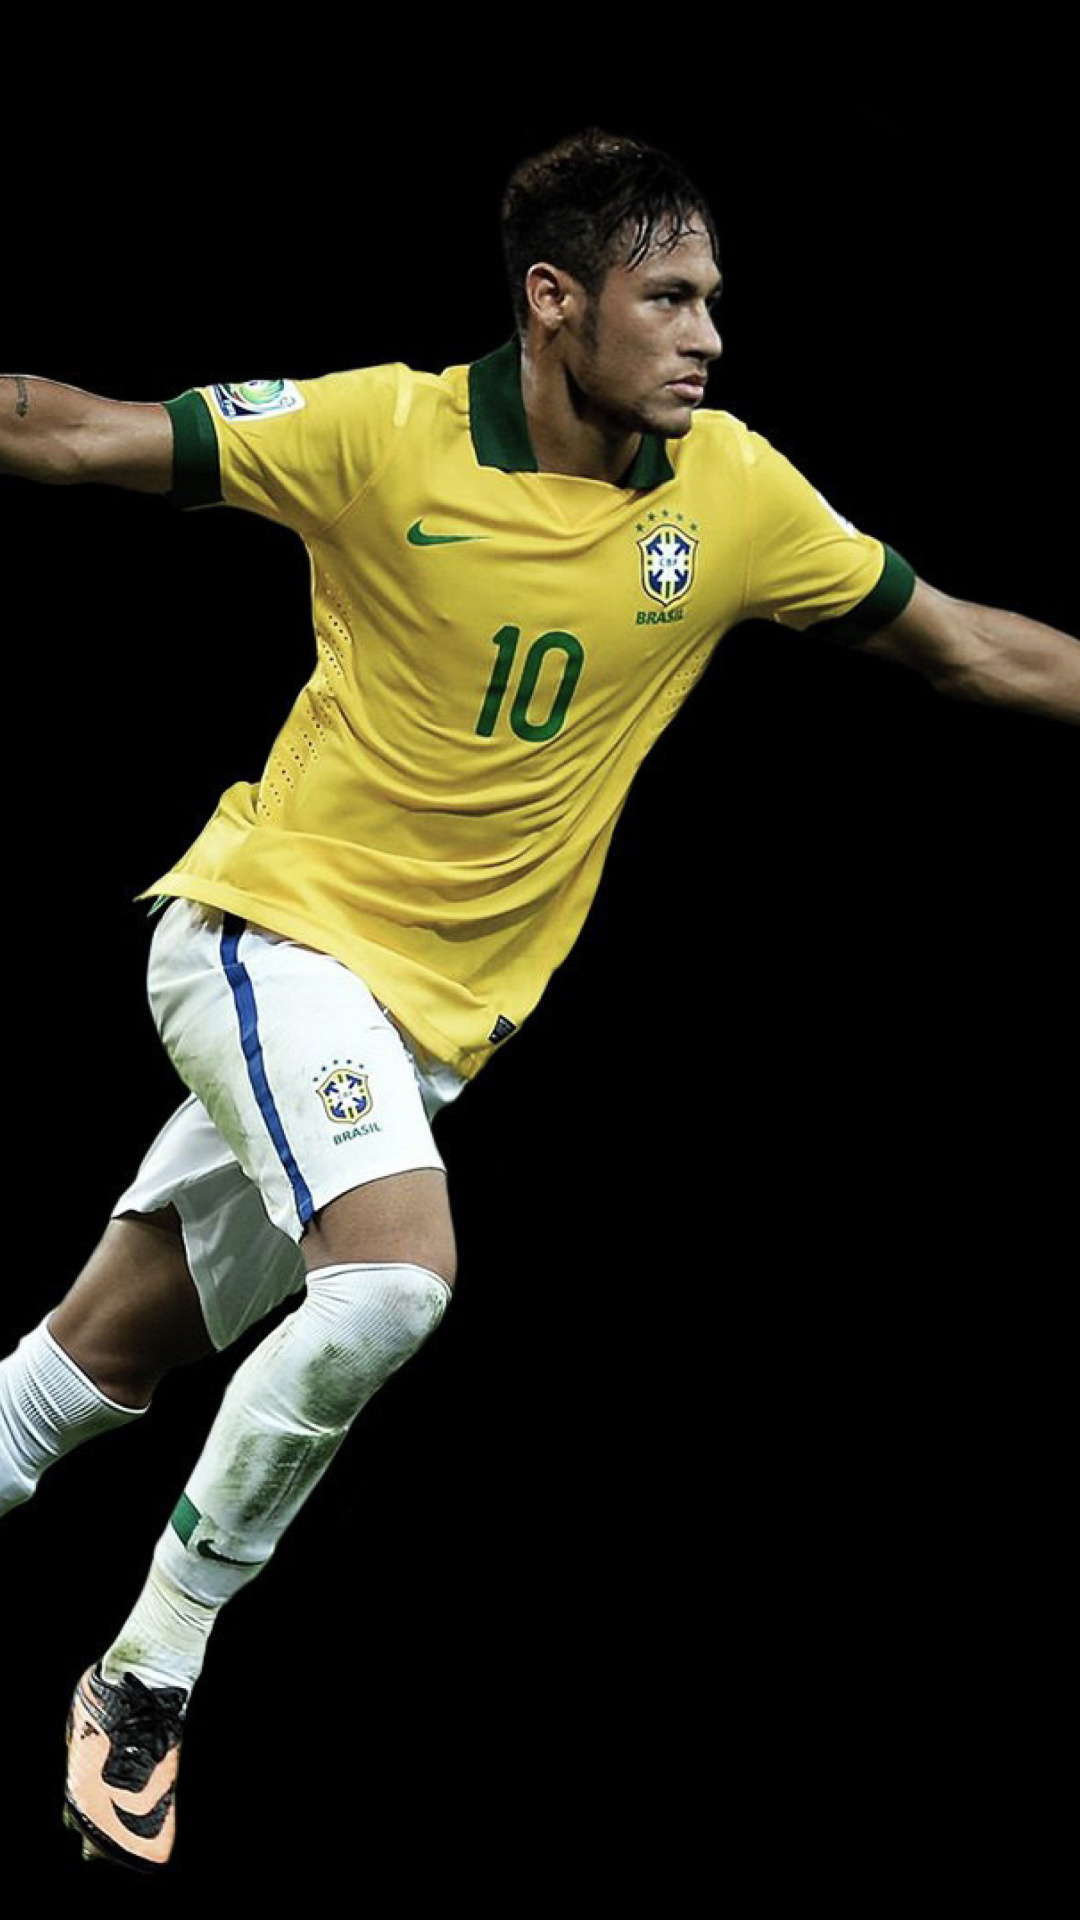 Das Neymar Brazil Football Player Wallpaper 1080x1920